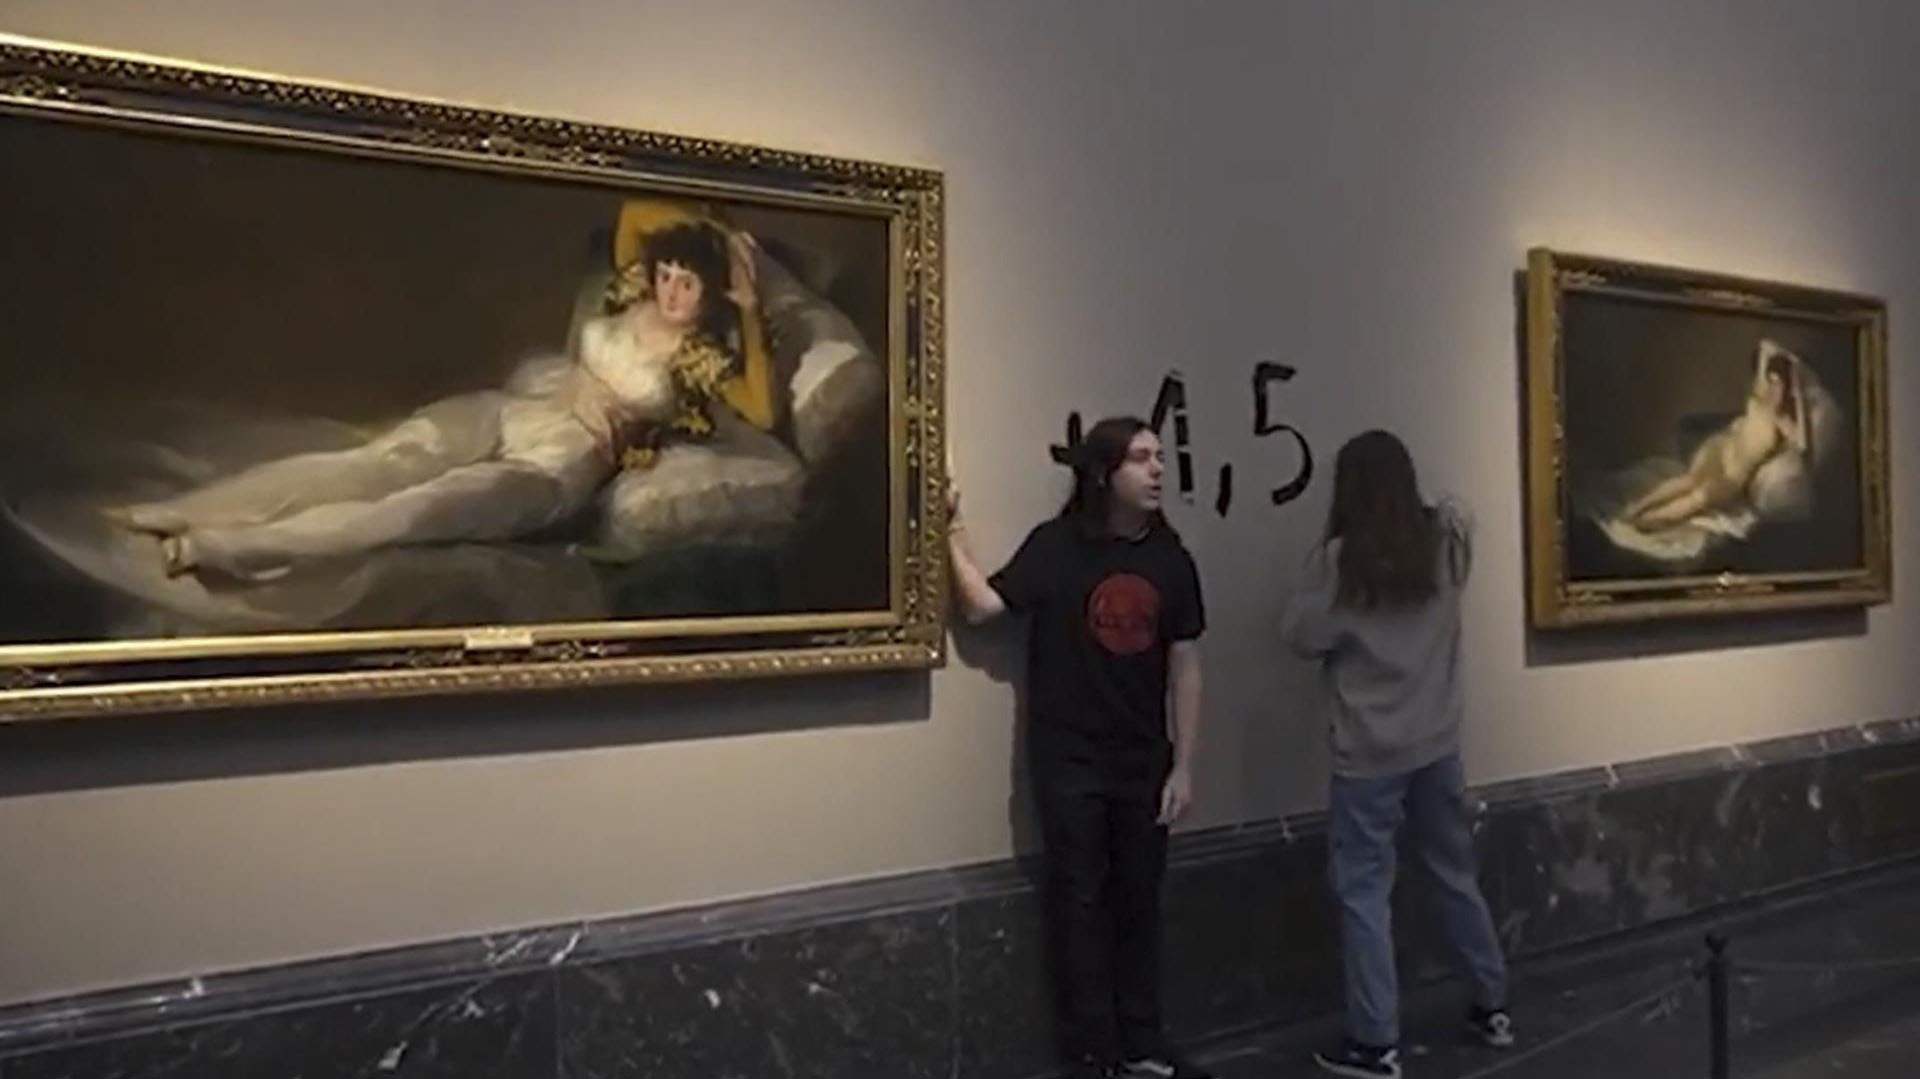 Activistas atacaron obras de Goya en el Museo del Prado